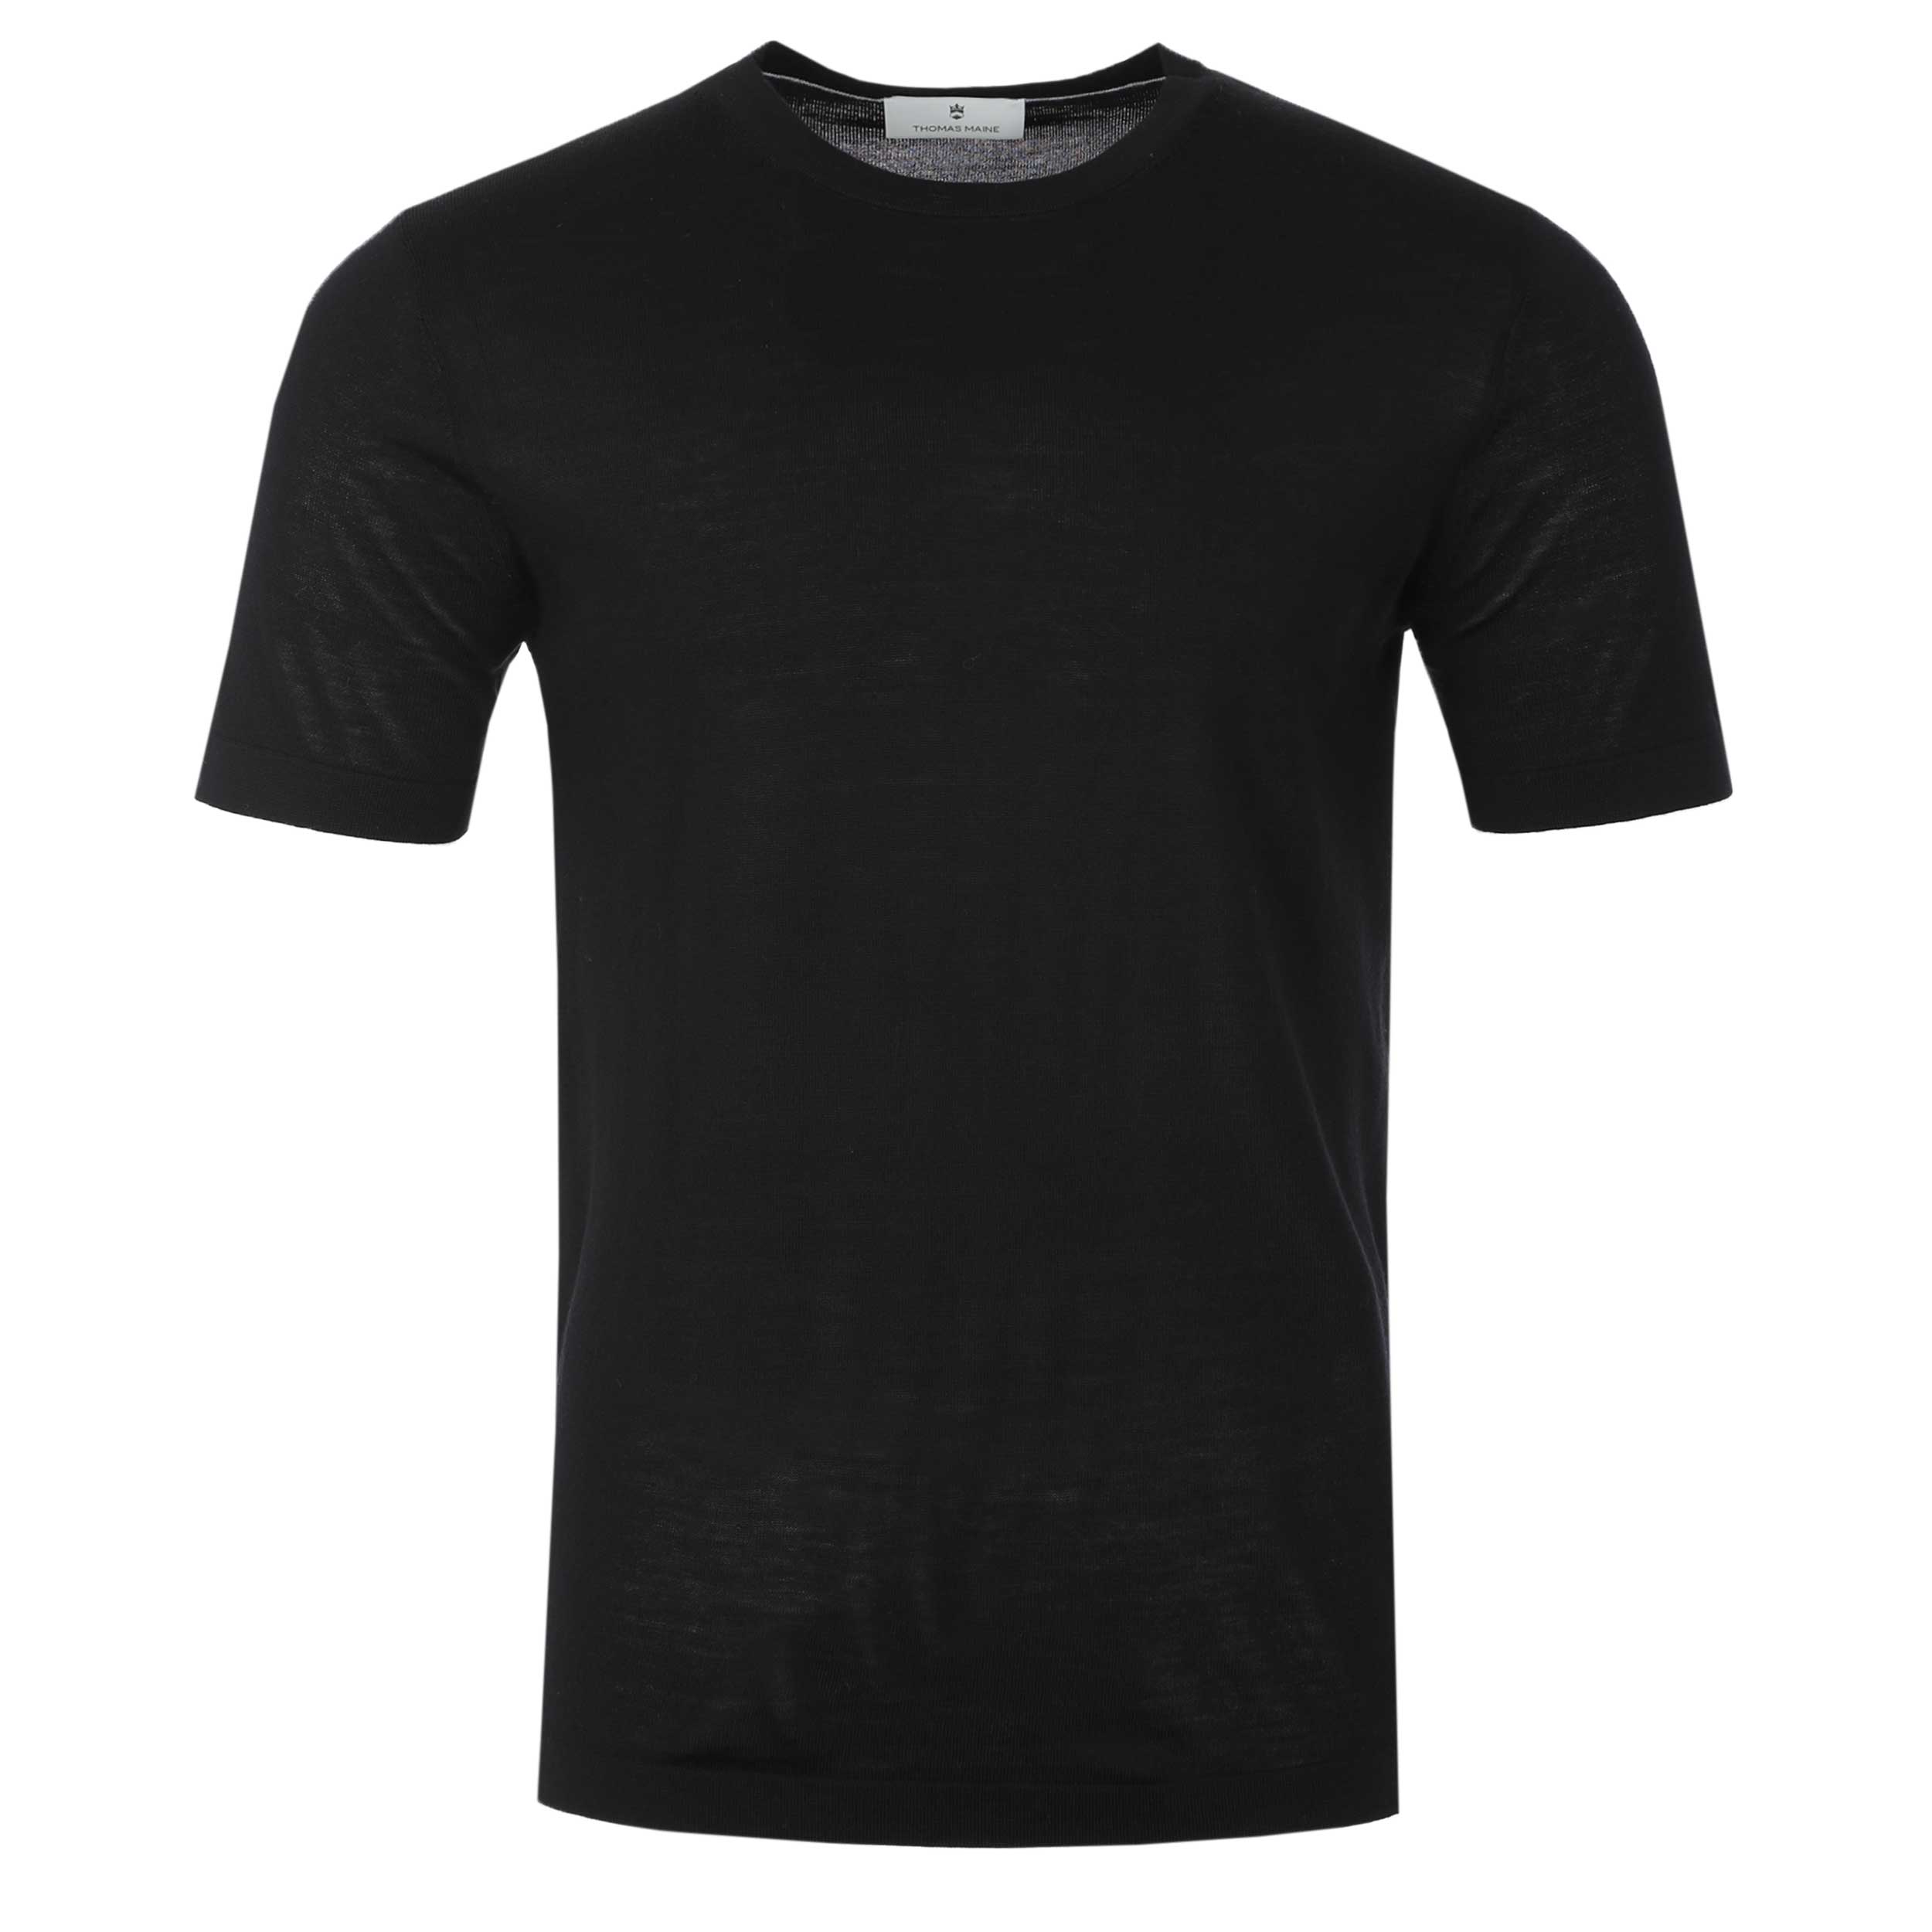 Thomas Maine Merino T-Shirt in Black